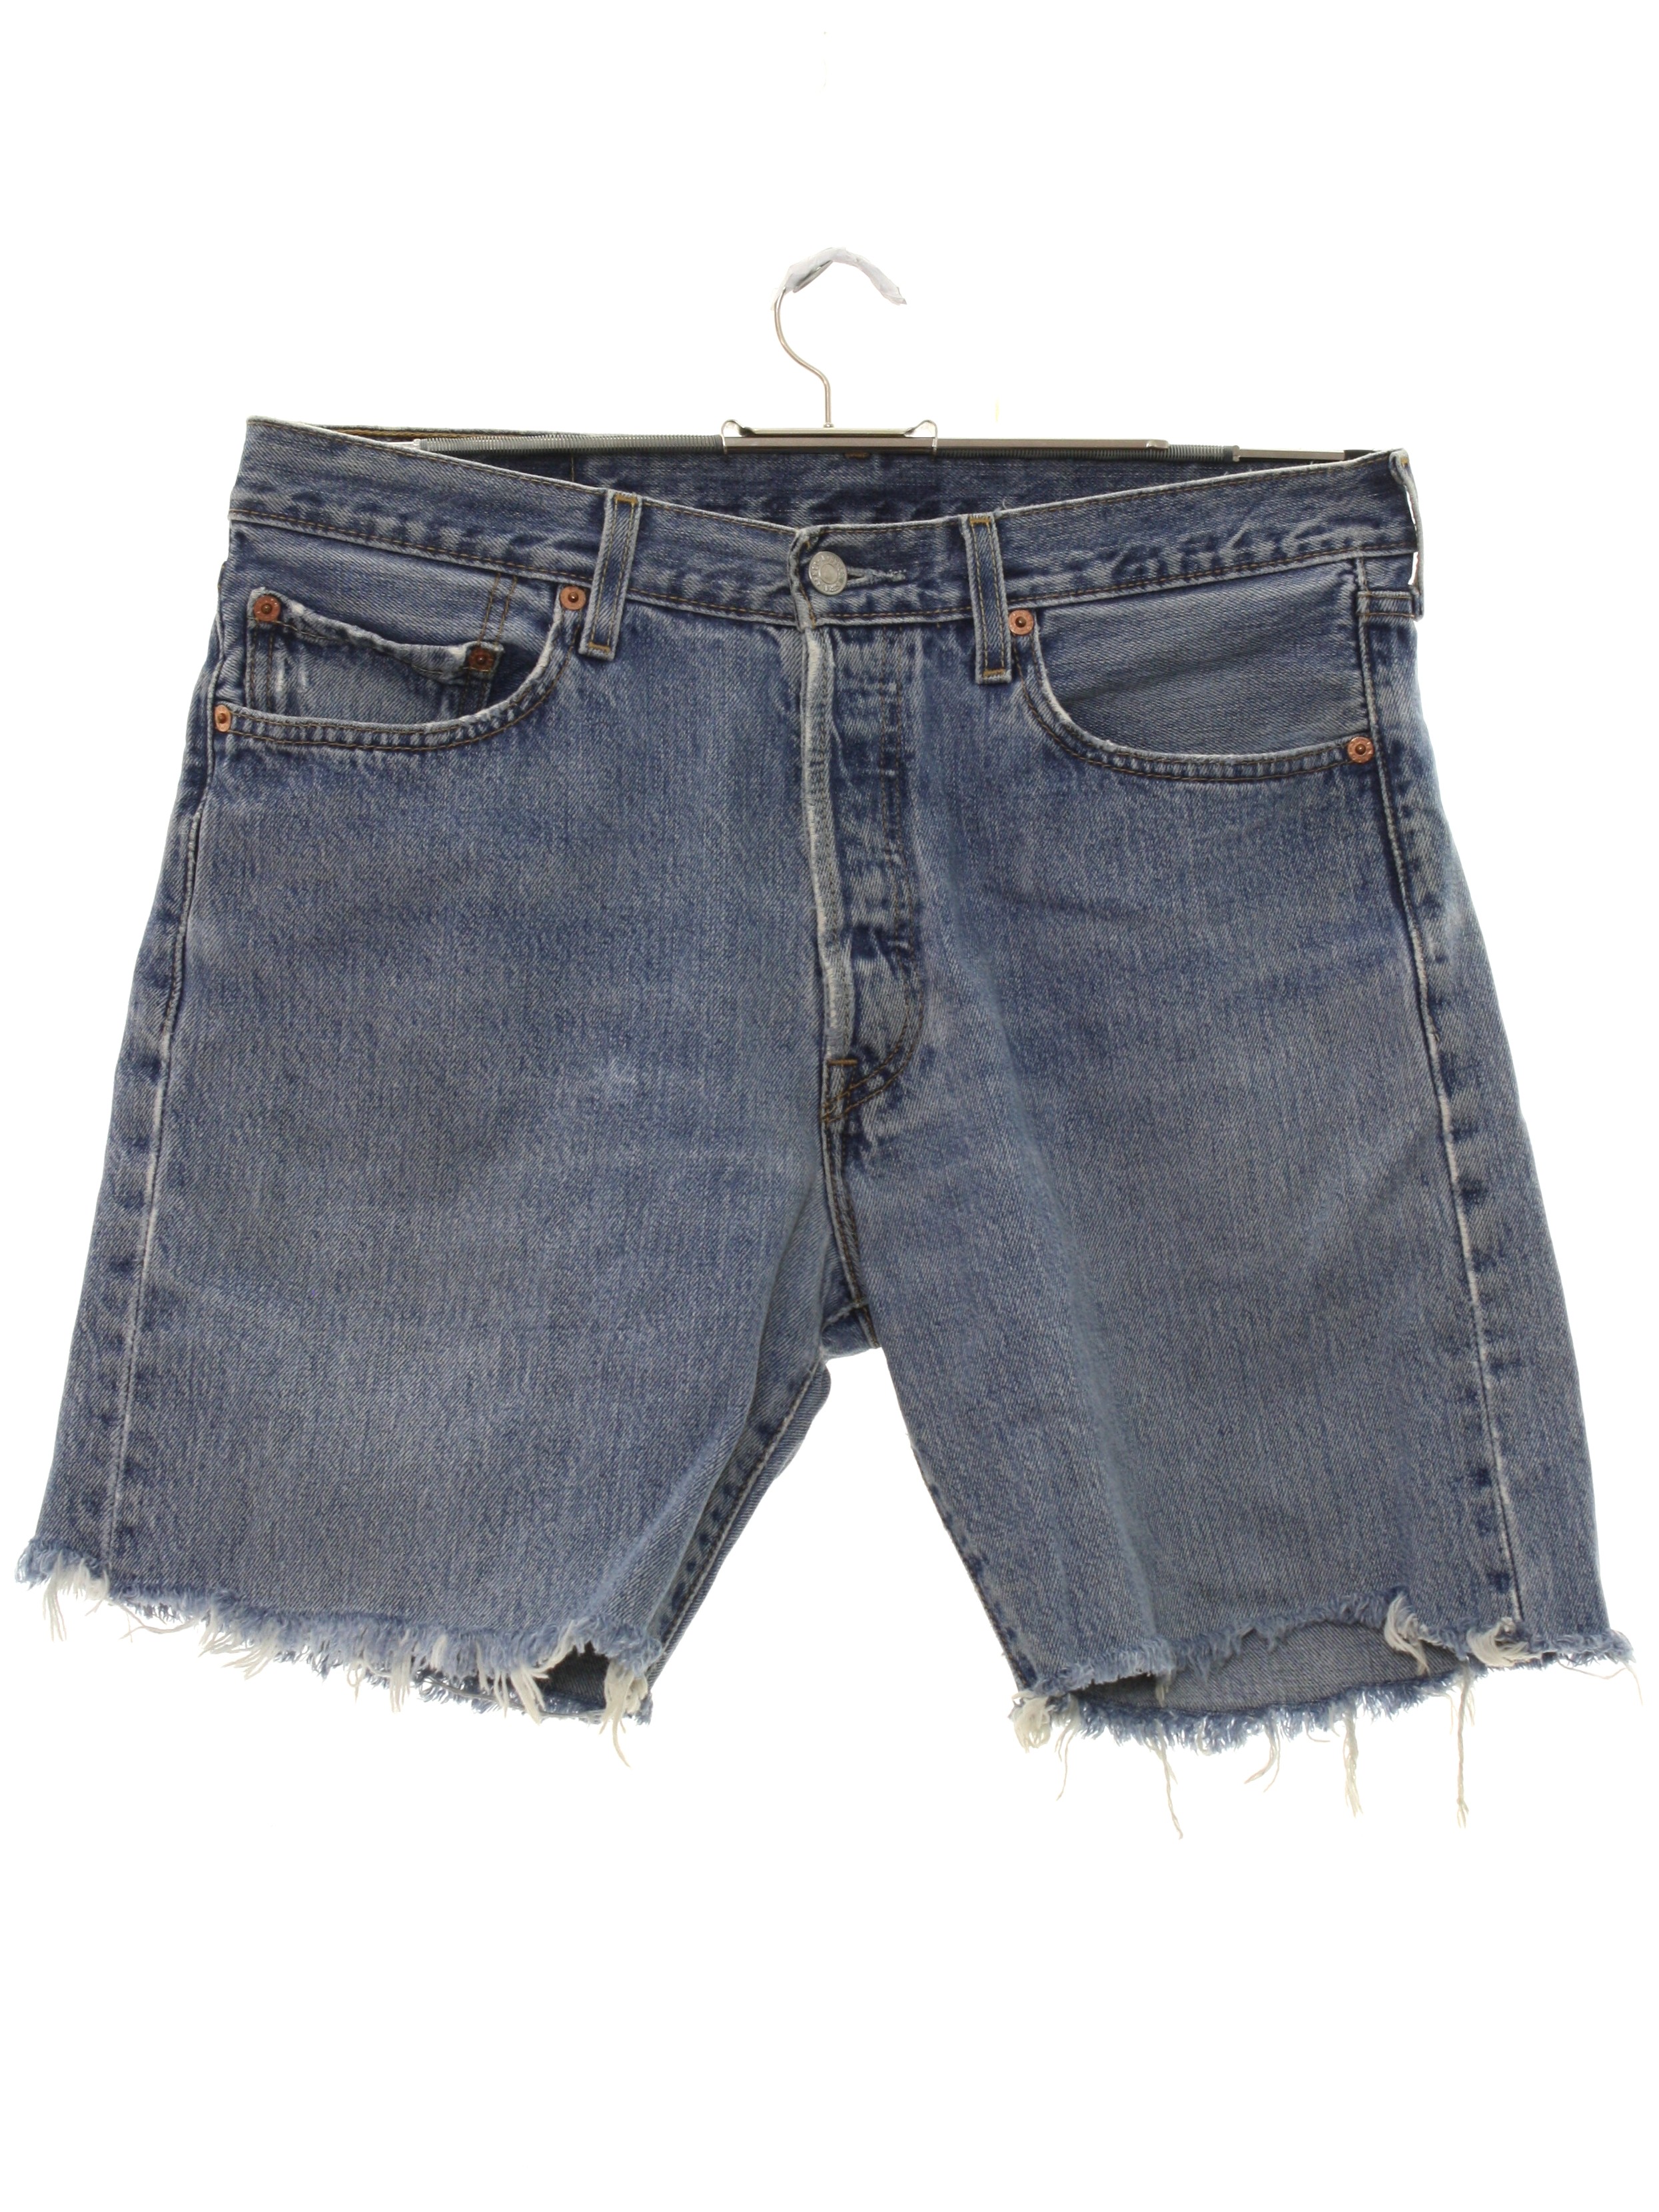 Amazon.com: Mens Cut Off Jean Shorts